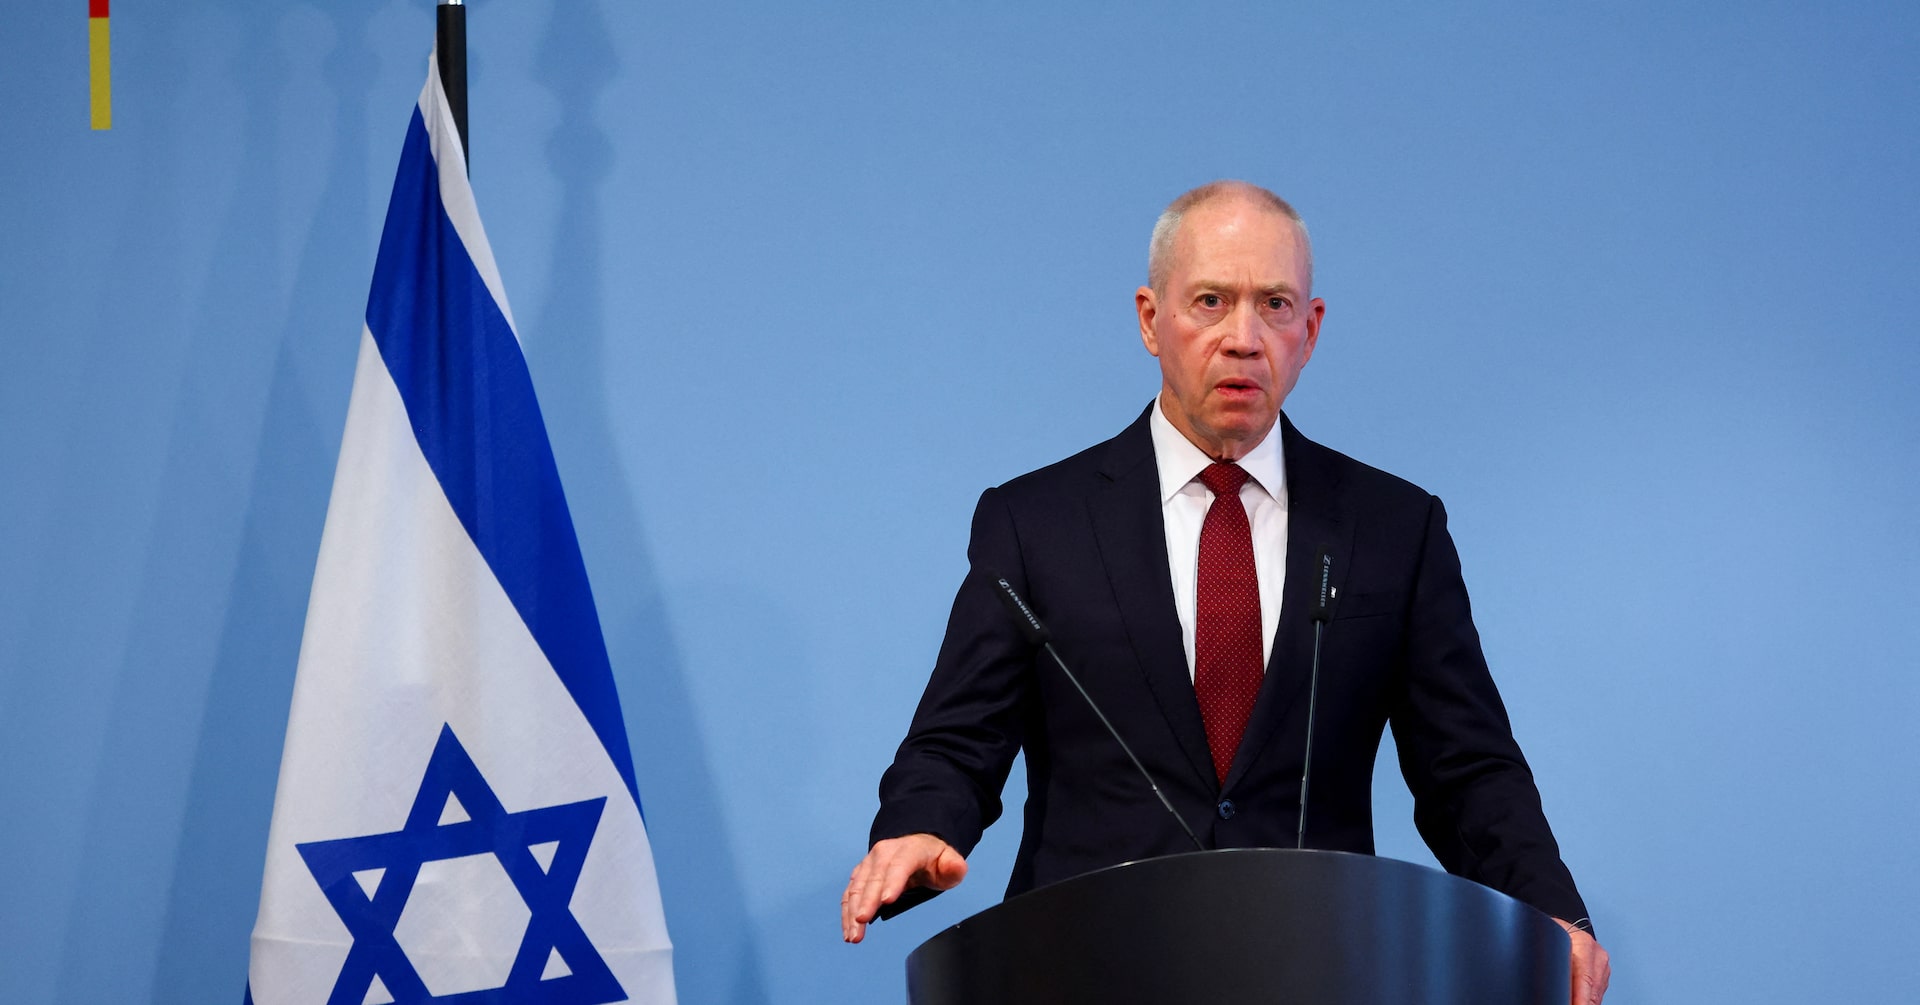 イスラエル国防相、ガザ戦後統治で首相に異議 軍事支配排除求める